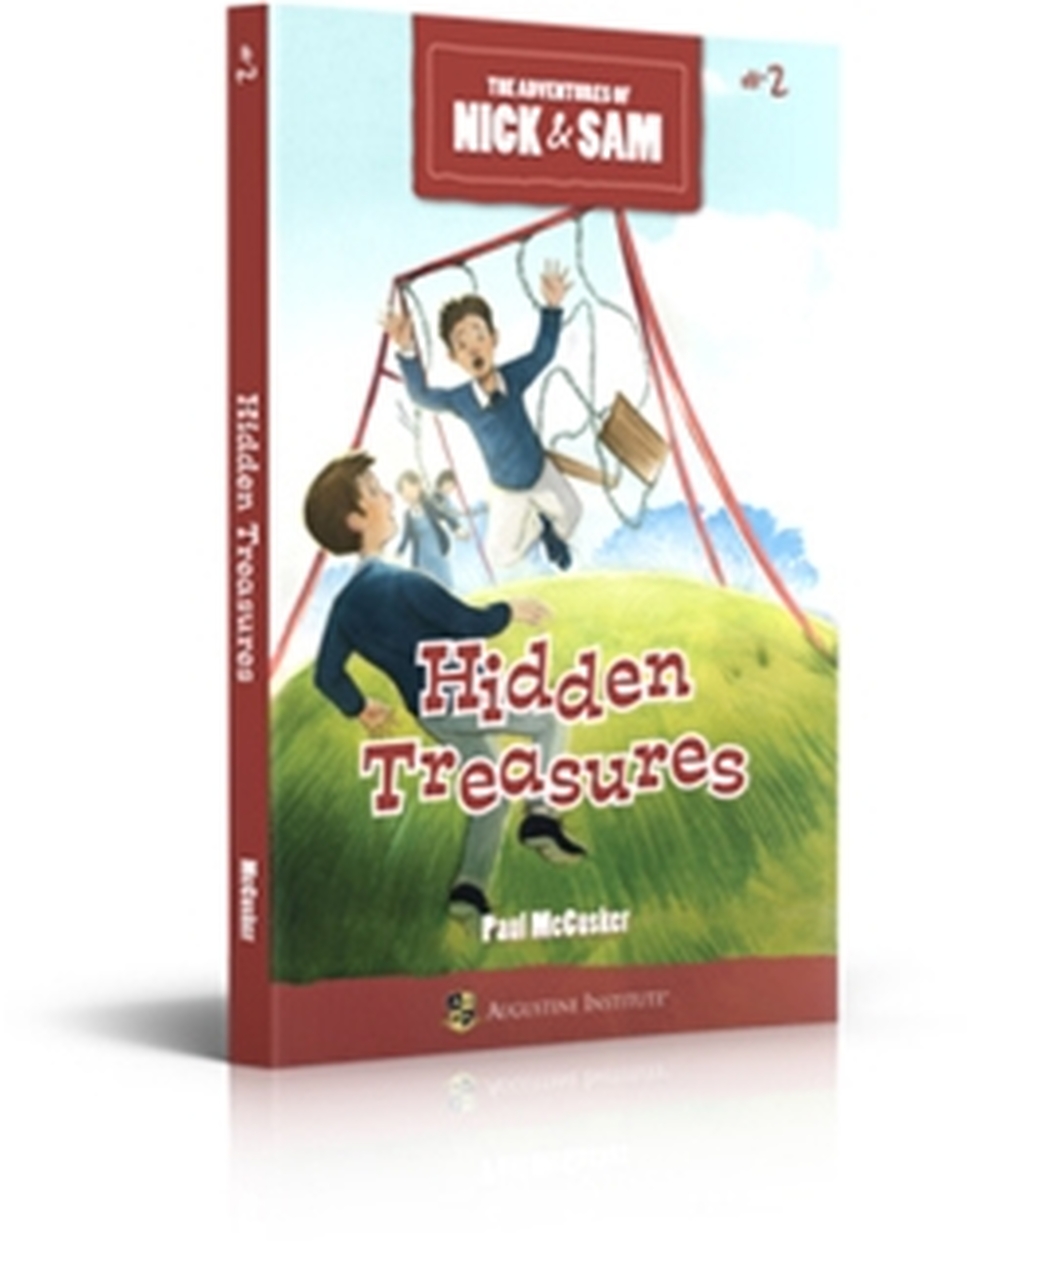 Hidden Treasures The Adventures of Nick & Sam Book #2 / Paul McCusker